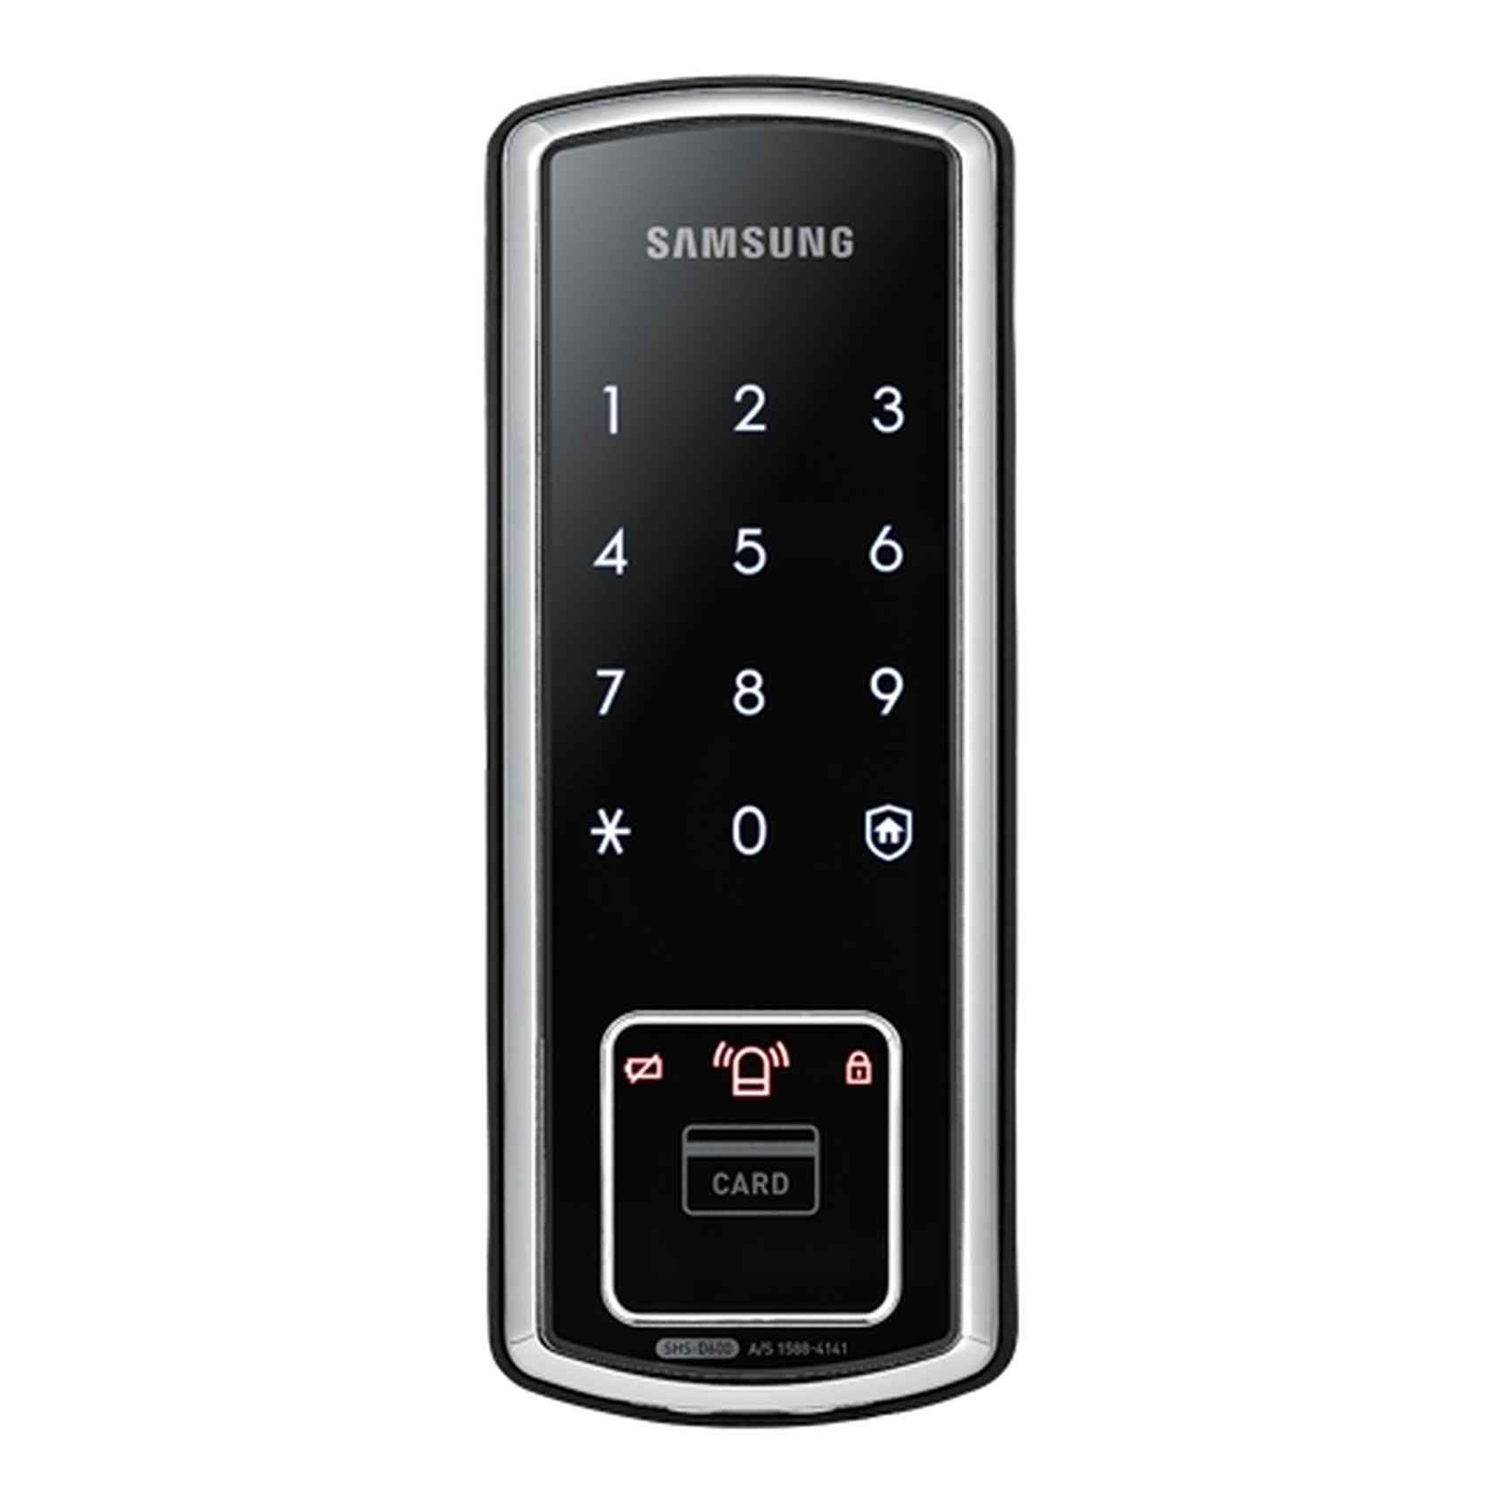 Khóa vân tay Samsung Rim Locks SHS-D600 cho nhà thông minh Samsung: Khóa vân tay Samsung Rim Locks SHS-D600 là một trong những giải pháp tiện lợi và an toàn nhất cho ngôi nhà của bạn. Với công nghệ vân tay, bạn có thể mở khóa cửa mà không cần sử dụng chìa khóa và mật khẩu. Ngoài ra, khóa còn được tích hợp các tính năng bảo vệ thông minh, giúp ngôi nhà của bạn luôn an toàn và bảo mật.